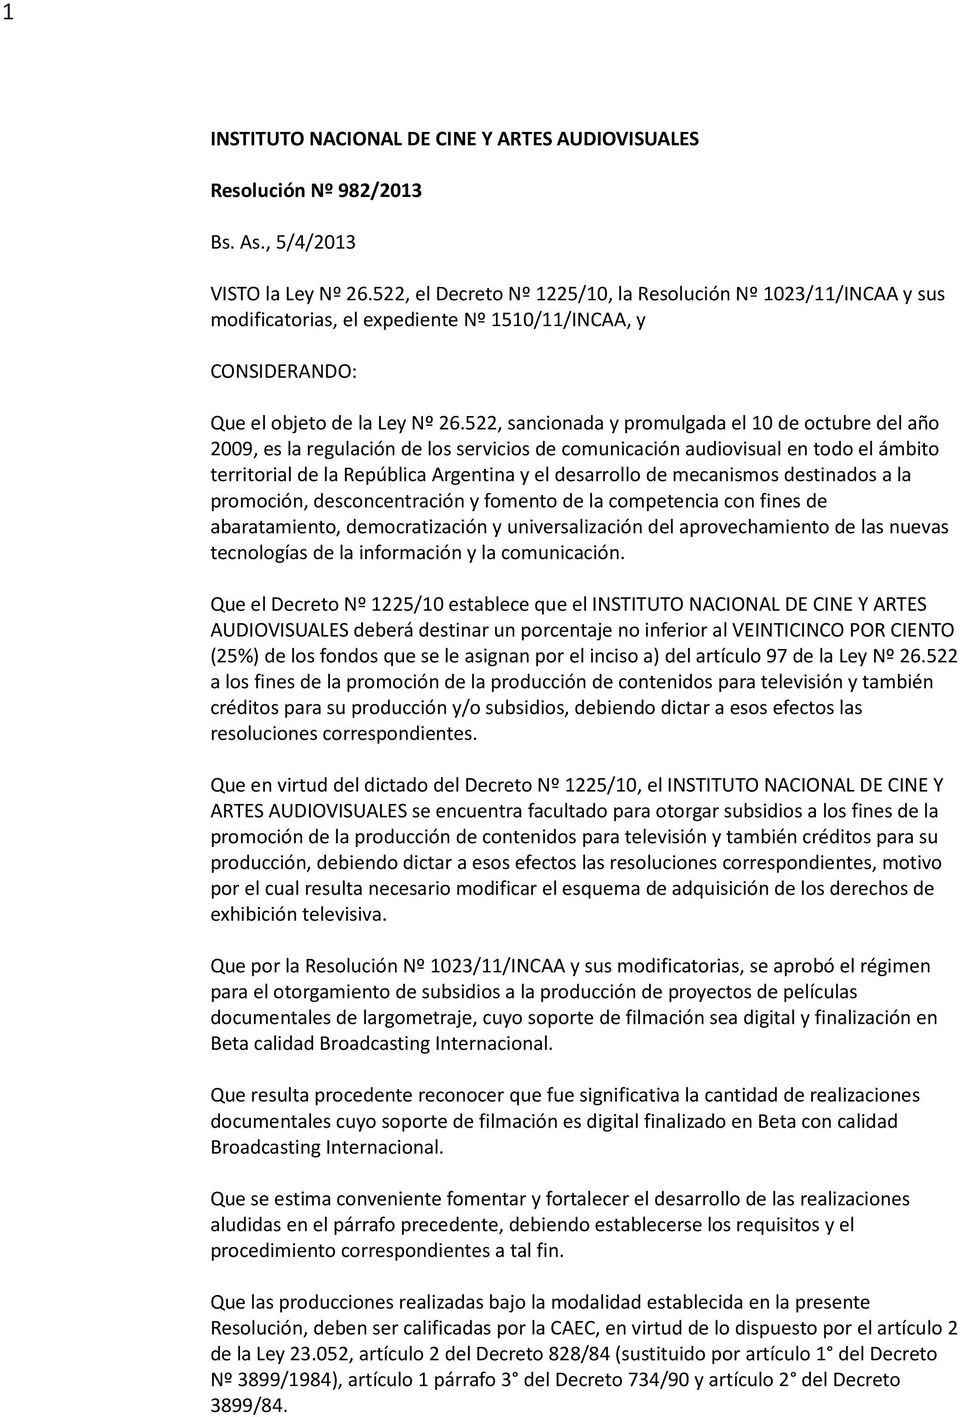 522, sancionada y promulgada el 10 de octubre del año 2009, es la regulación de los servicios de comunicación audiovisual en todo el ámbito territorial de la República Argentina y el desarrollo de